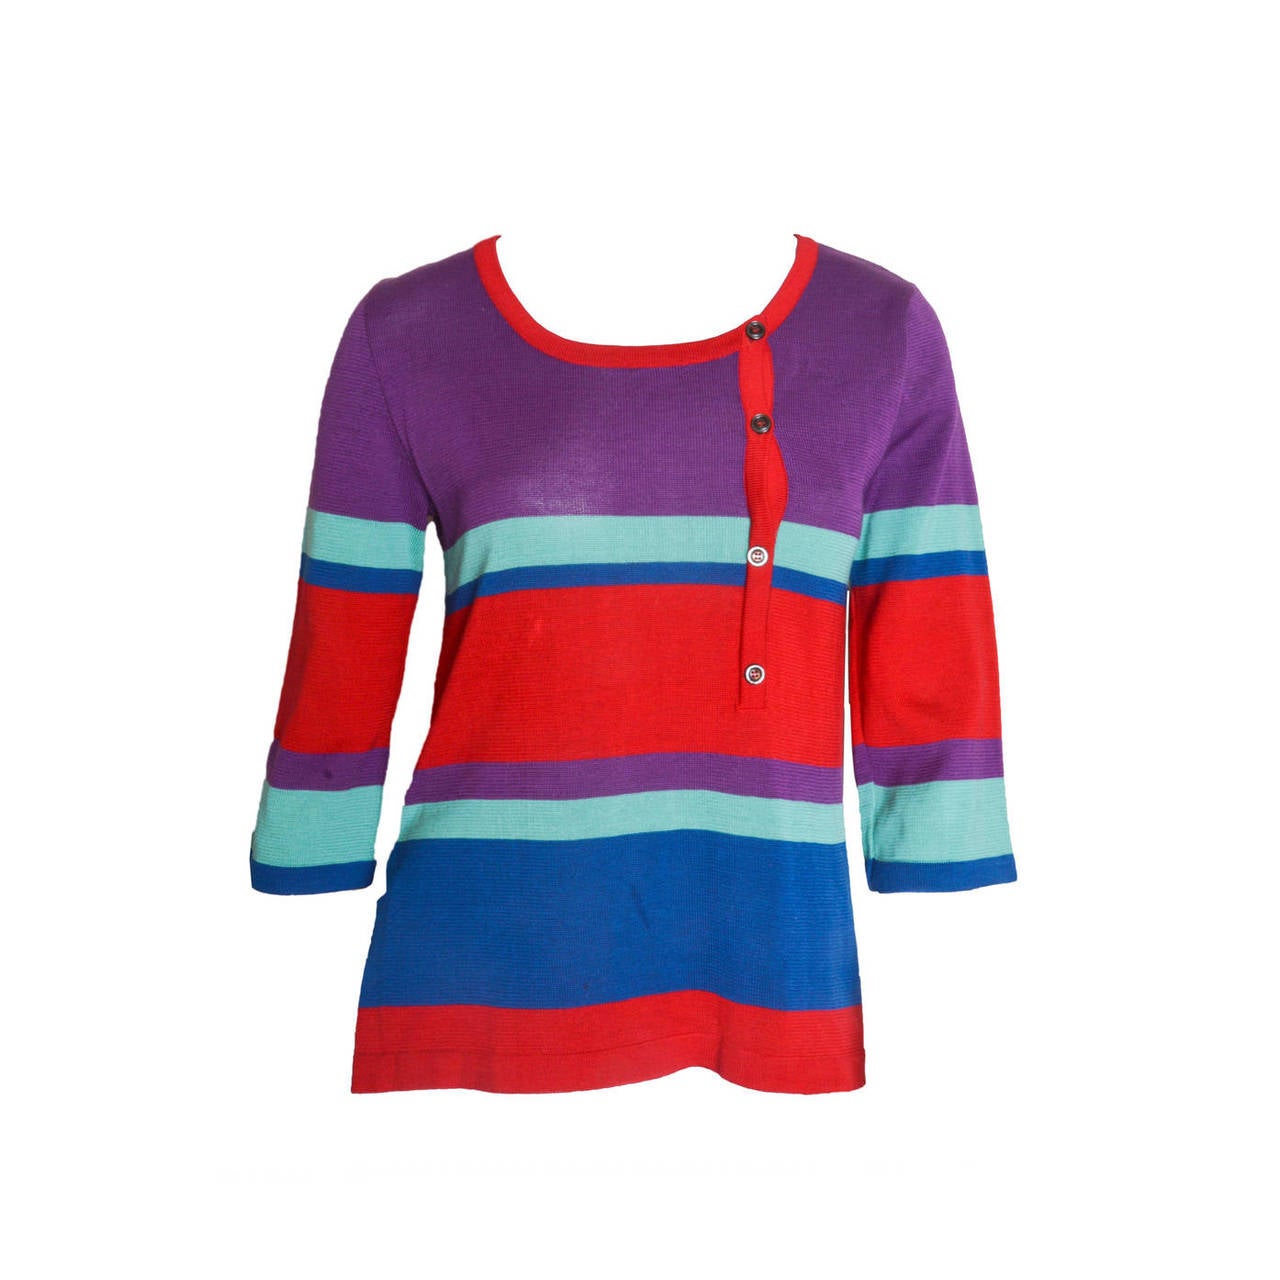 Yves Saint Laurent Rive Gauche Colorblock Knit Top